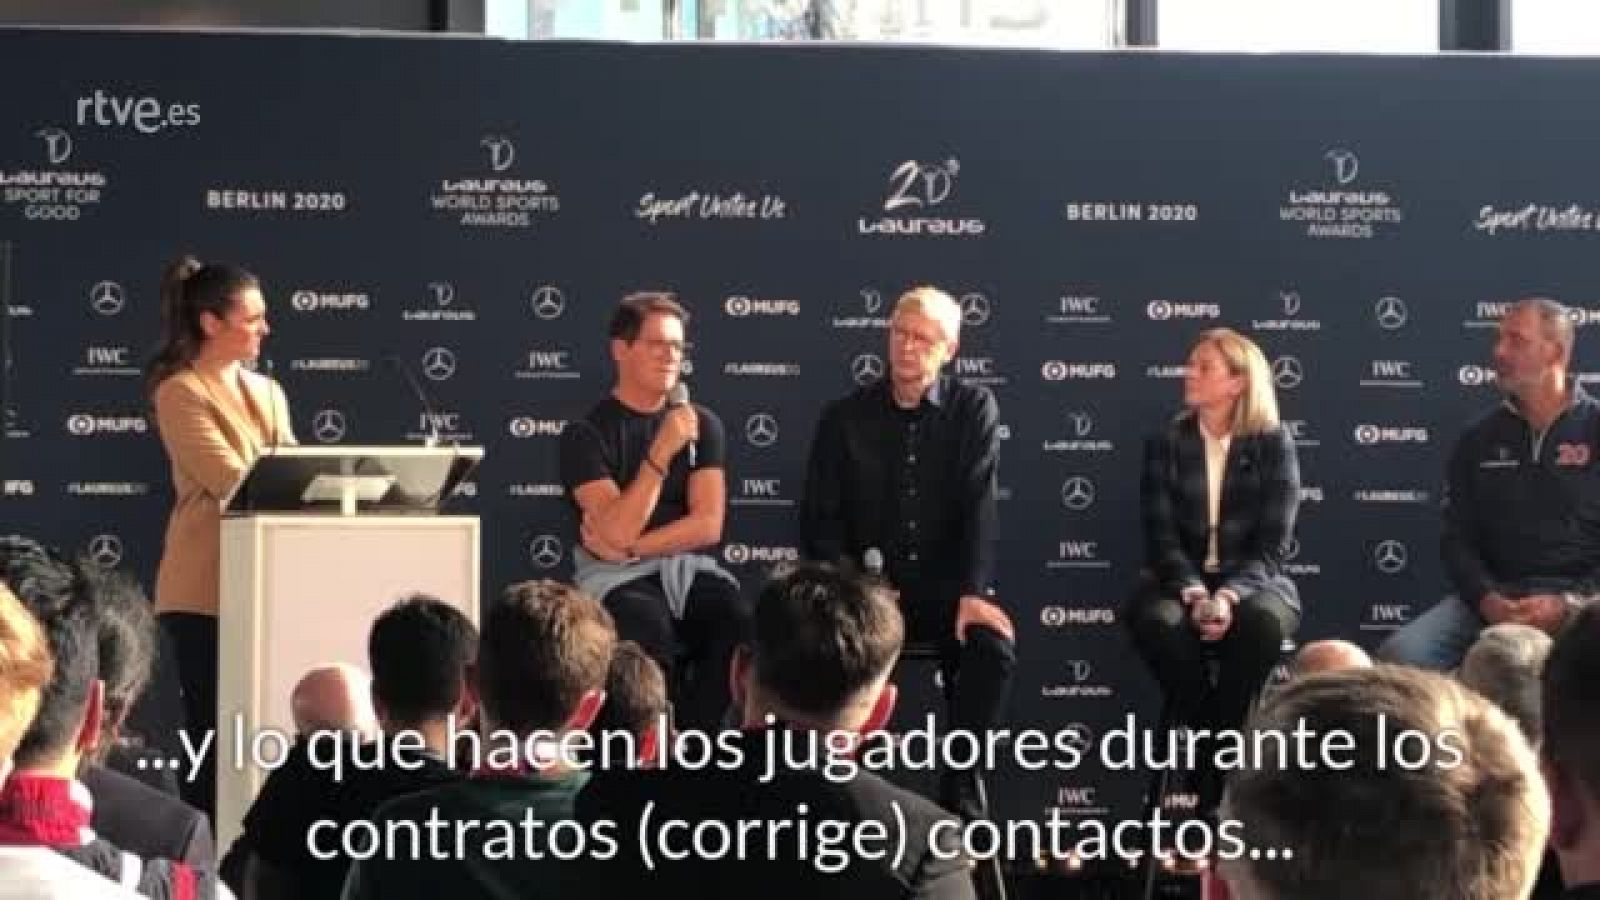 Vídeo: Fabio Capello pondría en el VAR a "un exjugador" - RTVE.es